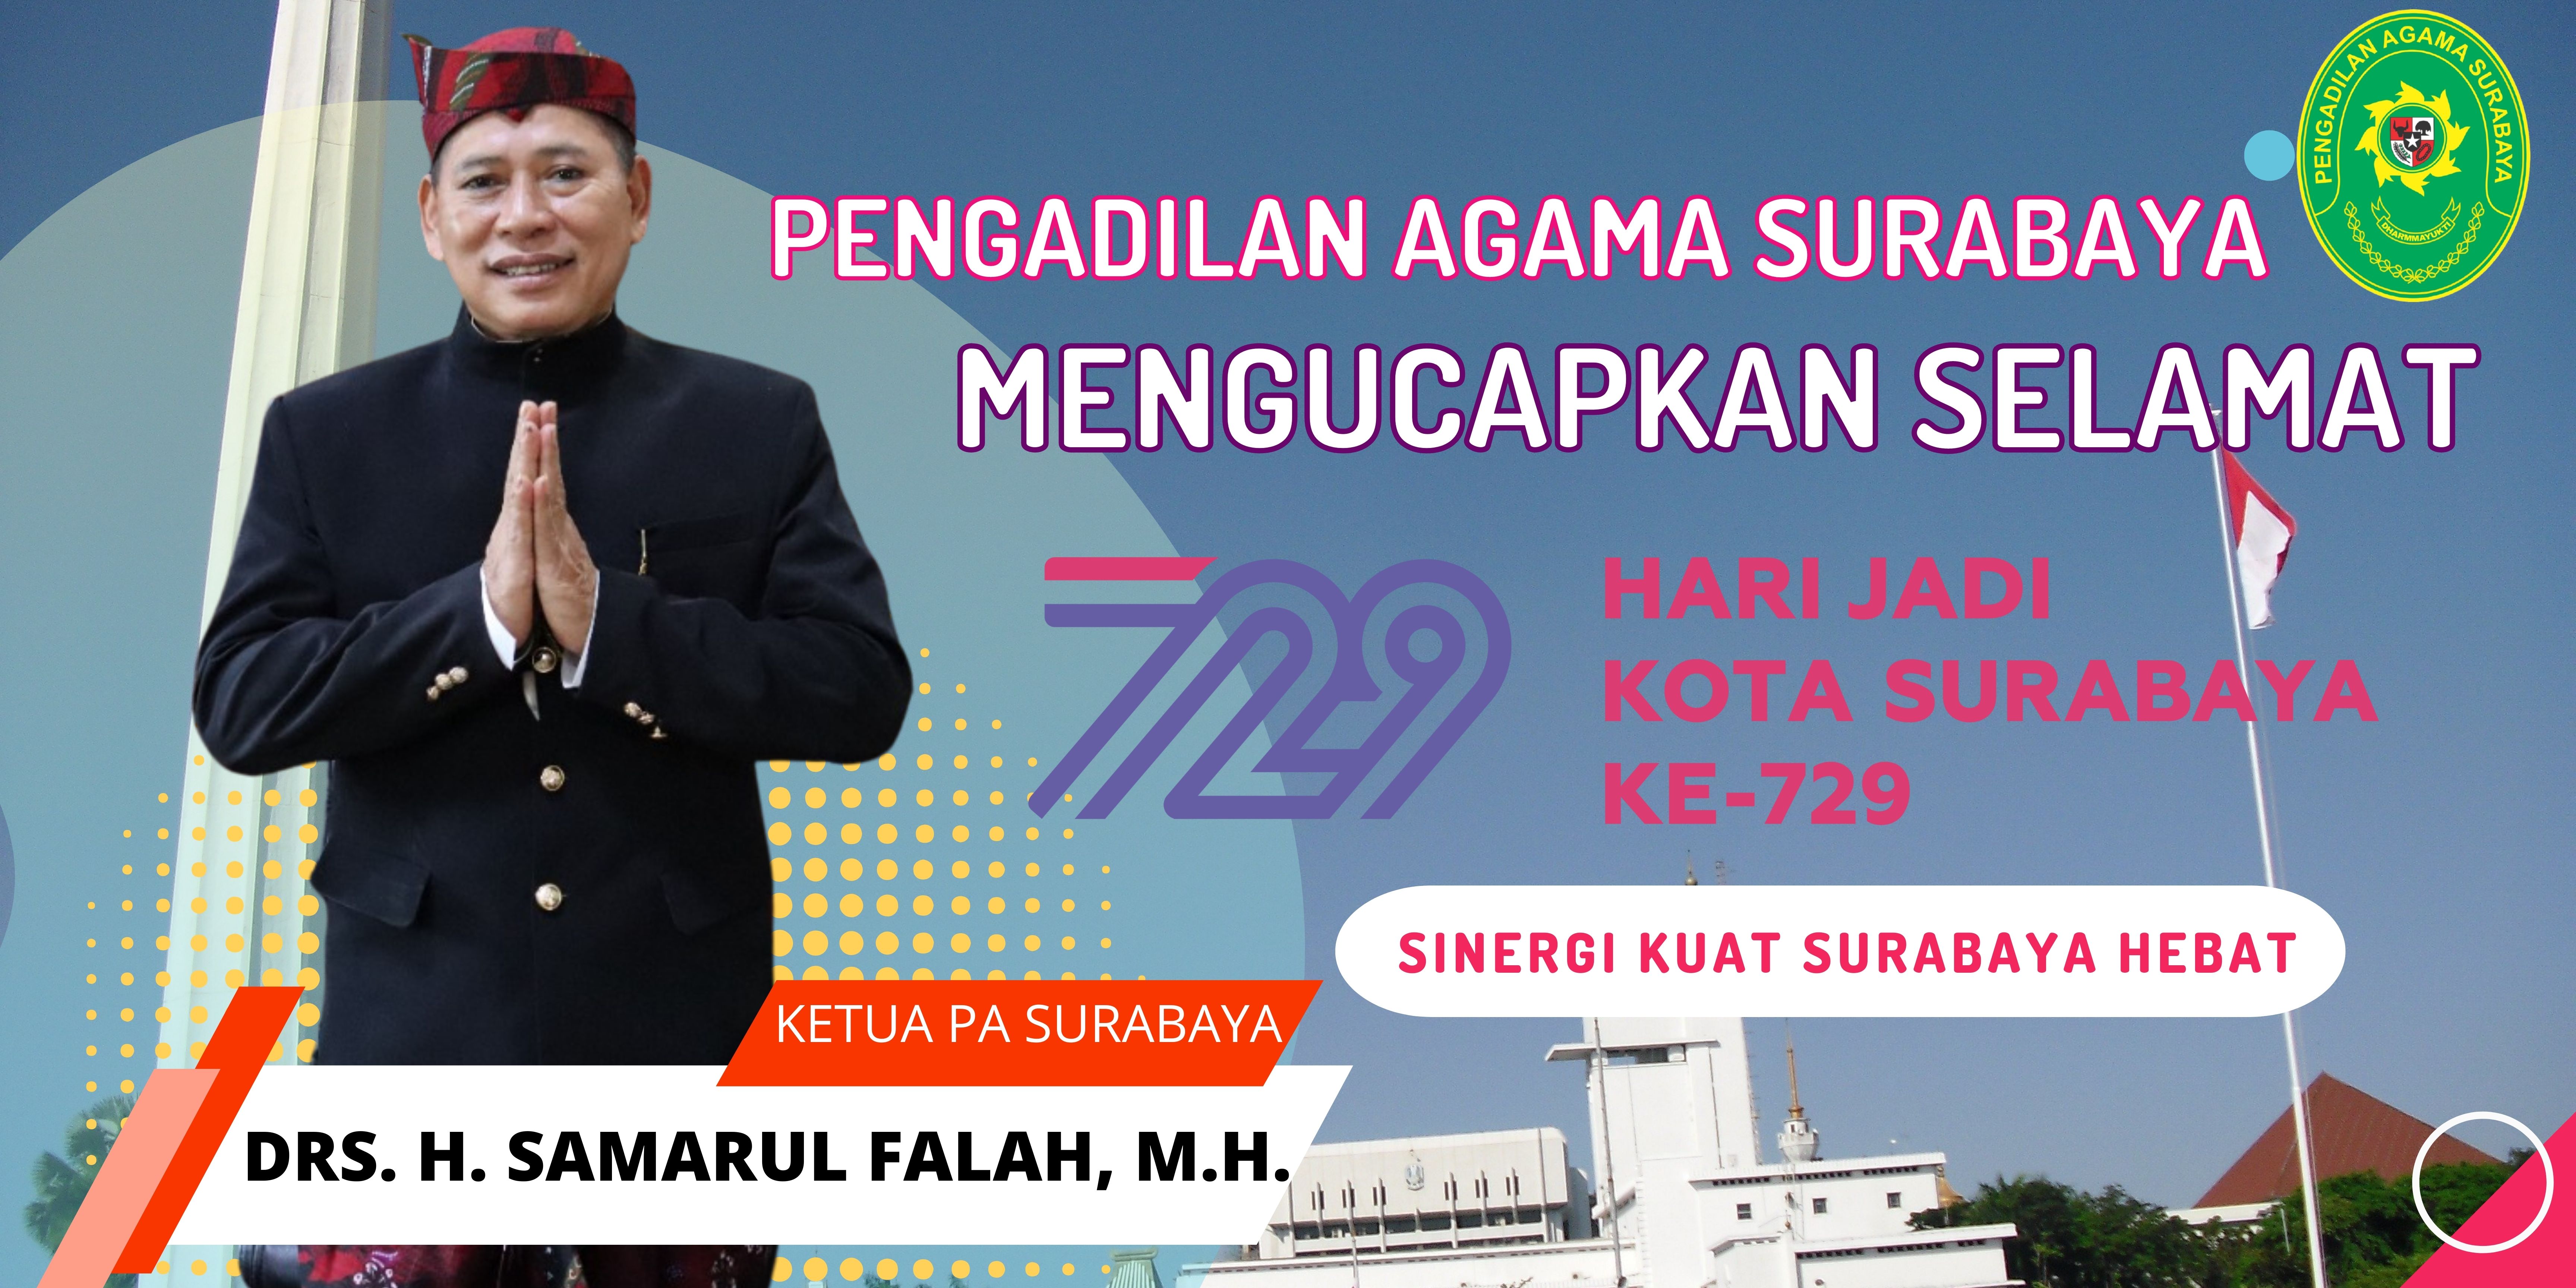 Pengadilan Agama Surabaya Kelas IA Mengucapkan Selamat Hari Jadi Kota Surabaya ke - 729